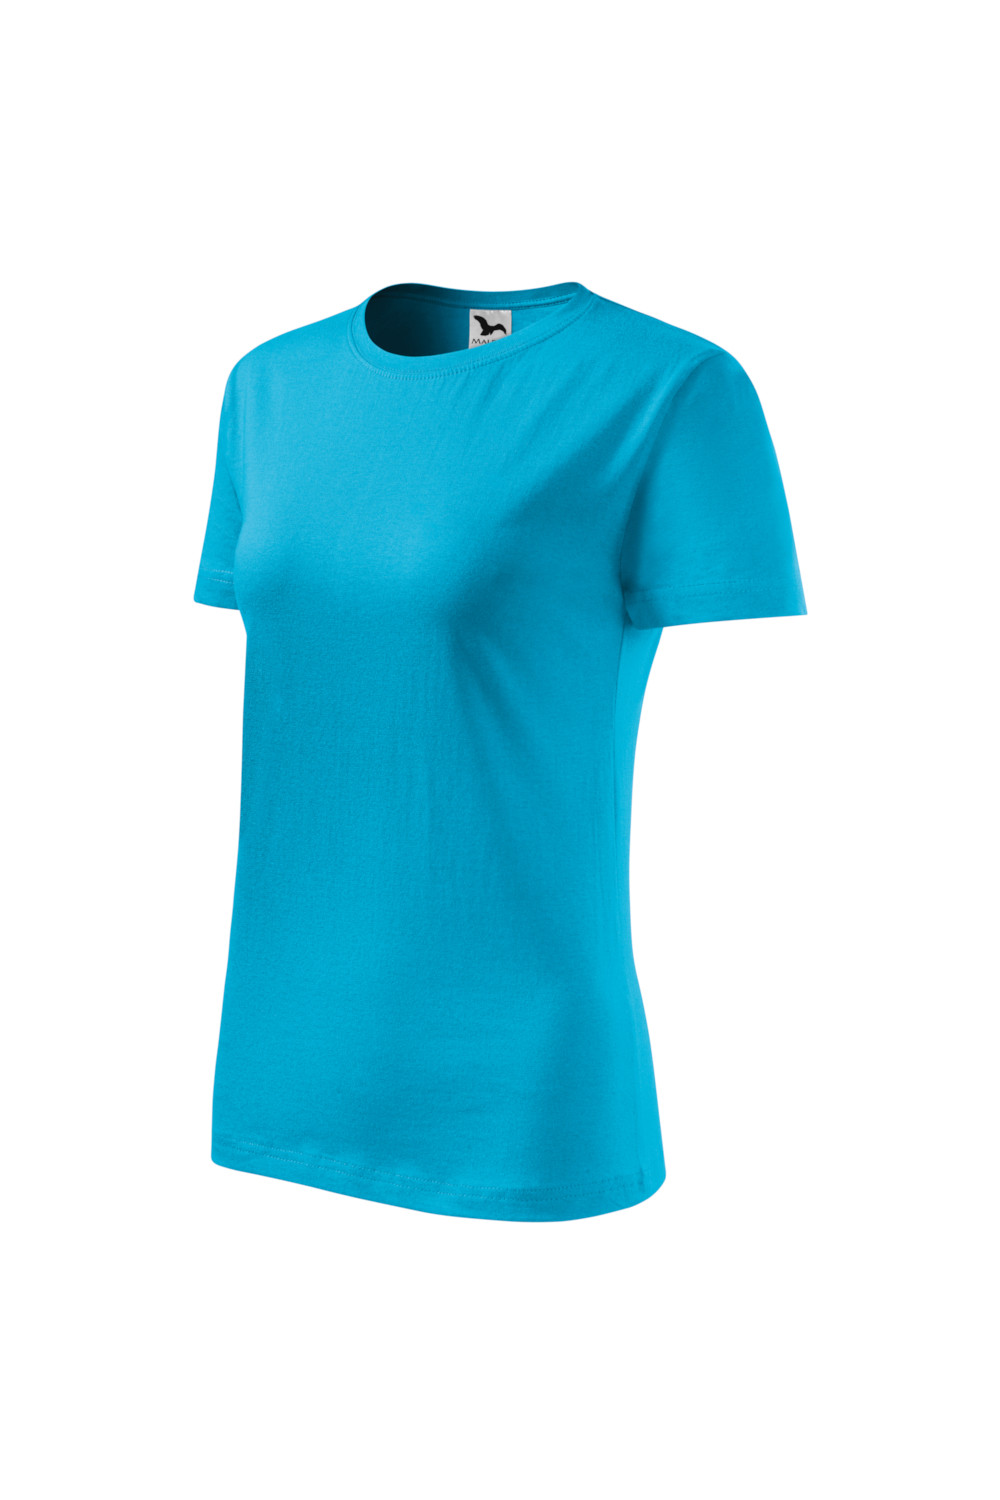 CLASSIC 133 MALFINI Koszulka damska 100% bawełna t-shirt turkus